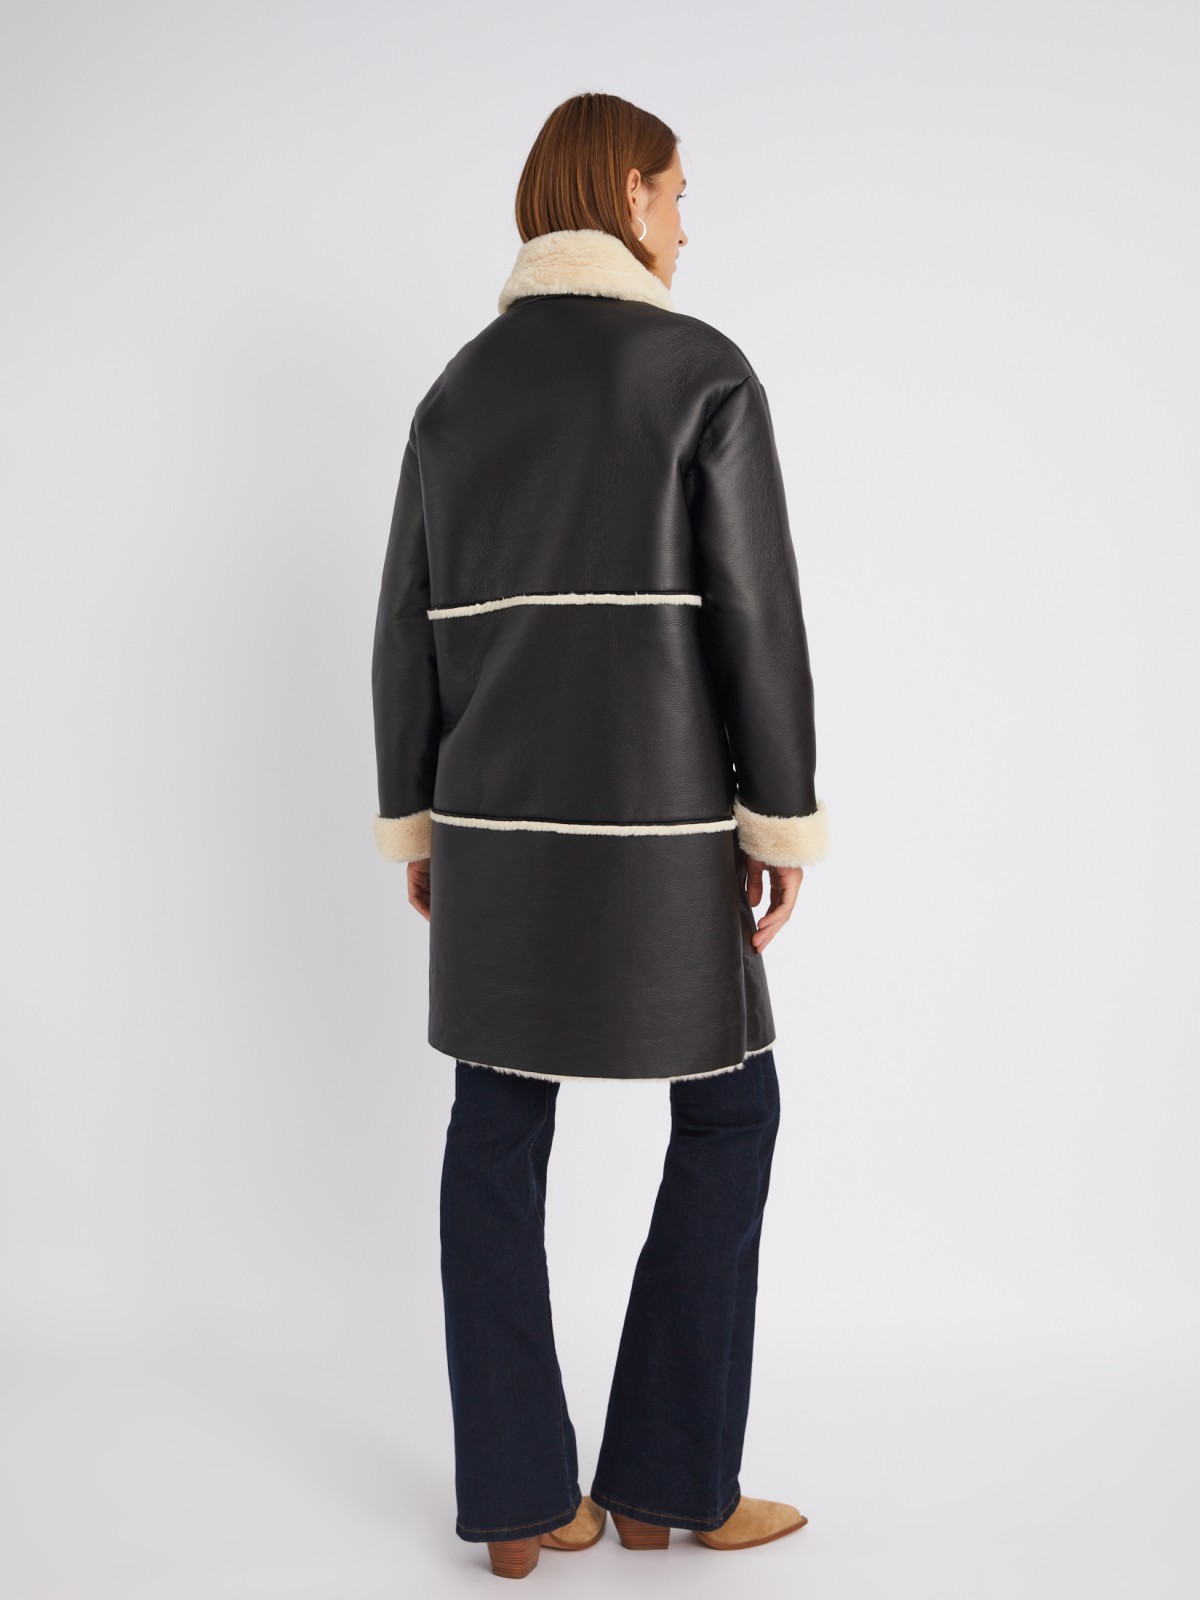 Длинное тёплое пальто-дублёнка из экокожи с искусственным мехом по подкладке zolla 023335550084, цвет черный, размер M - фото 6